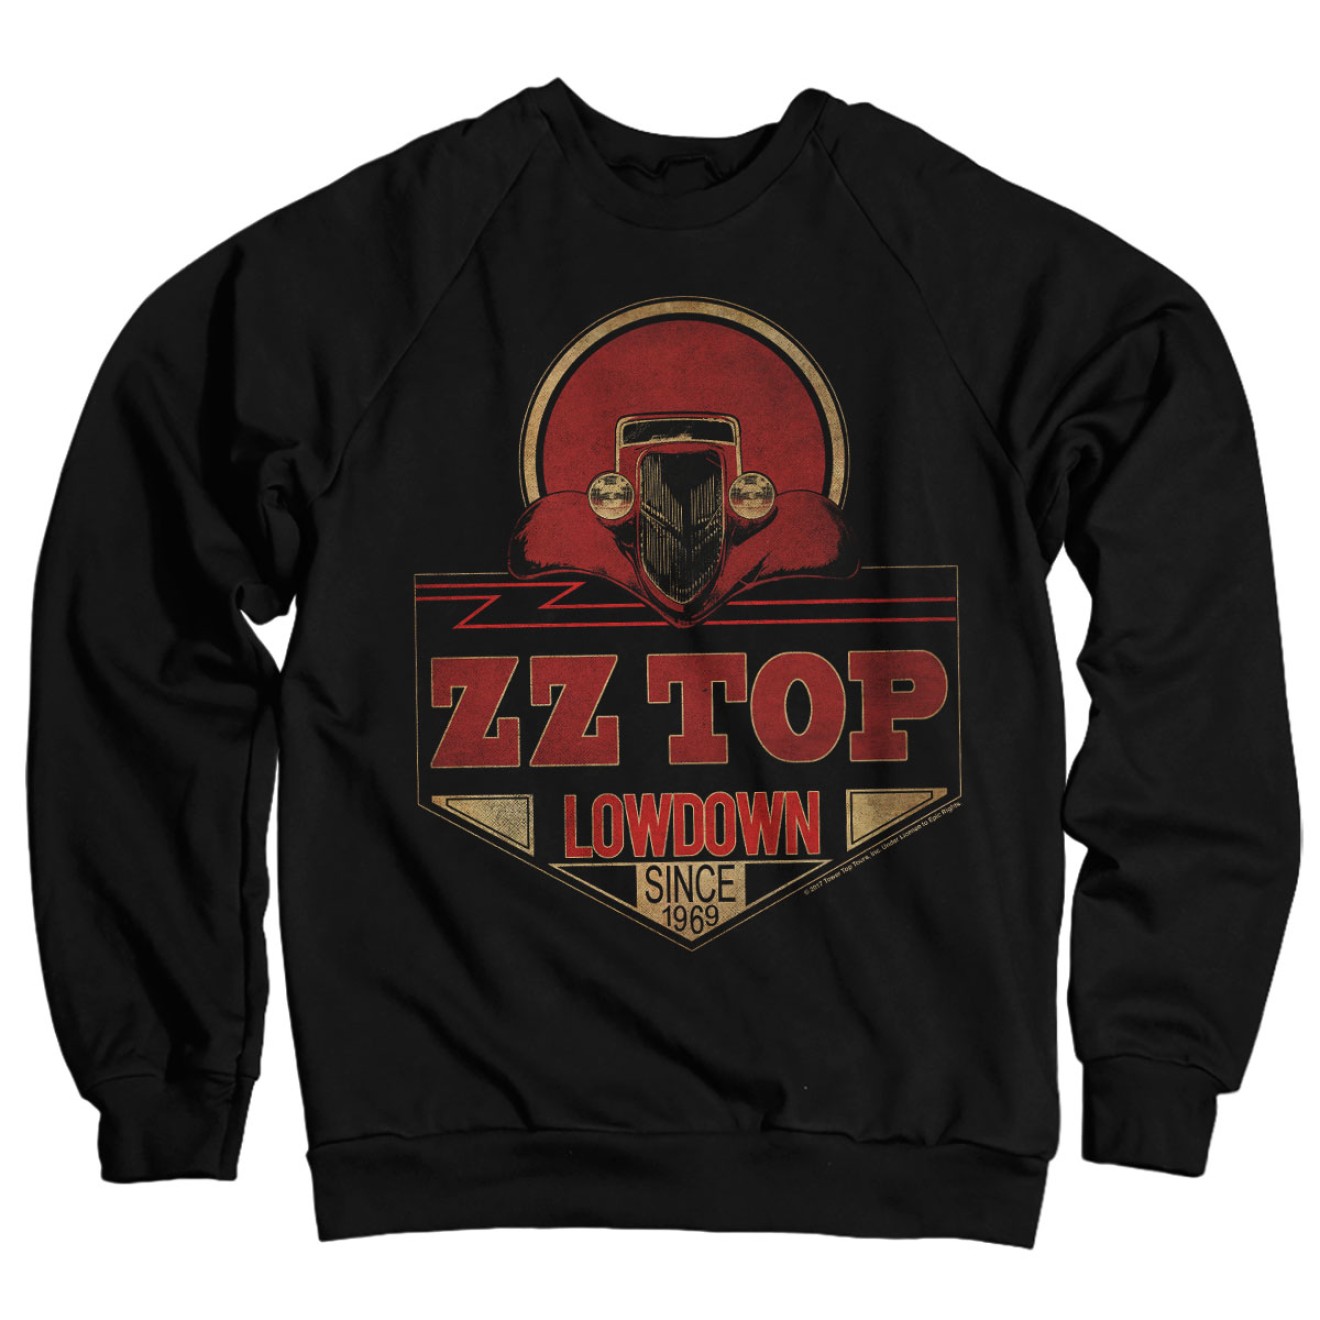 ZZ-Top - Lowdown Since 1969 Sweatshirt